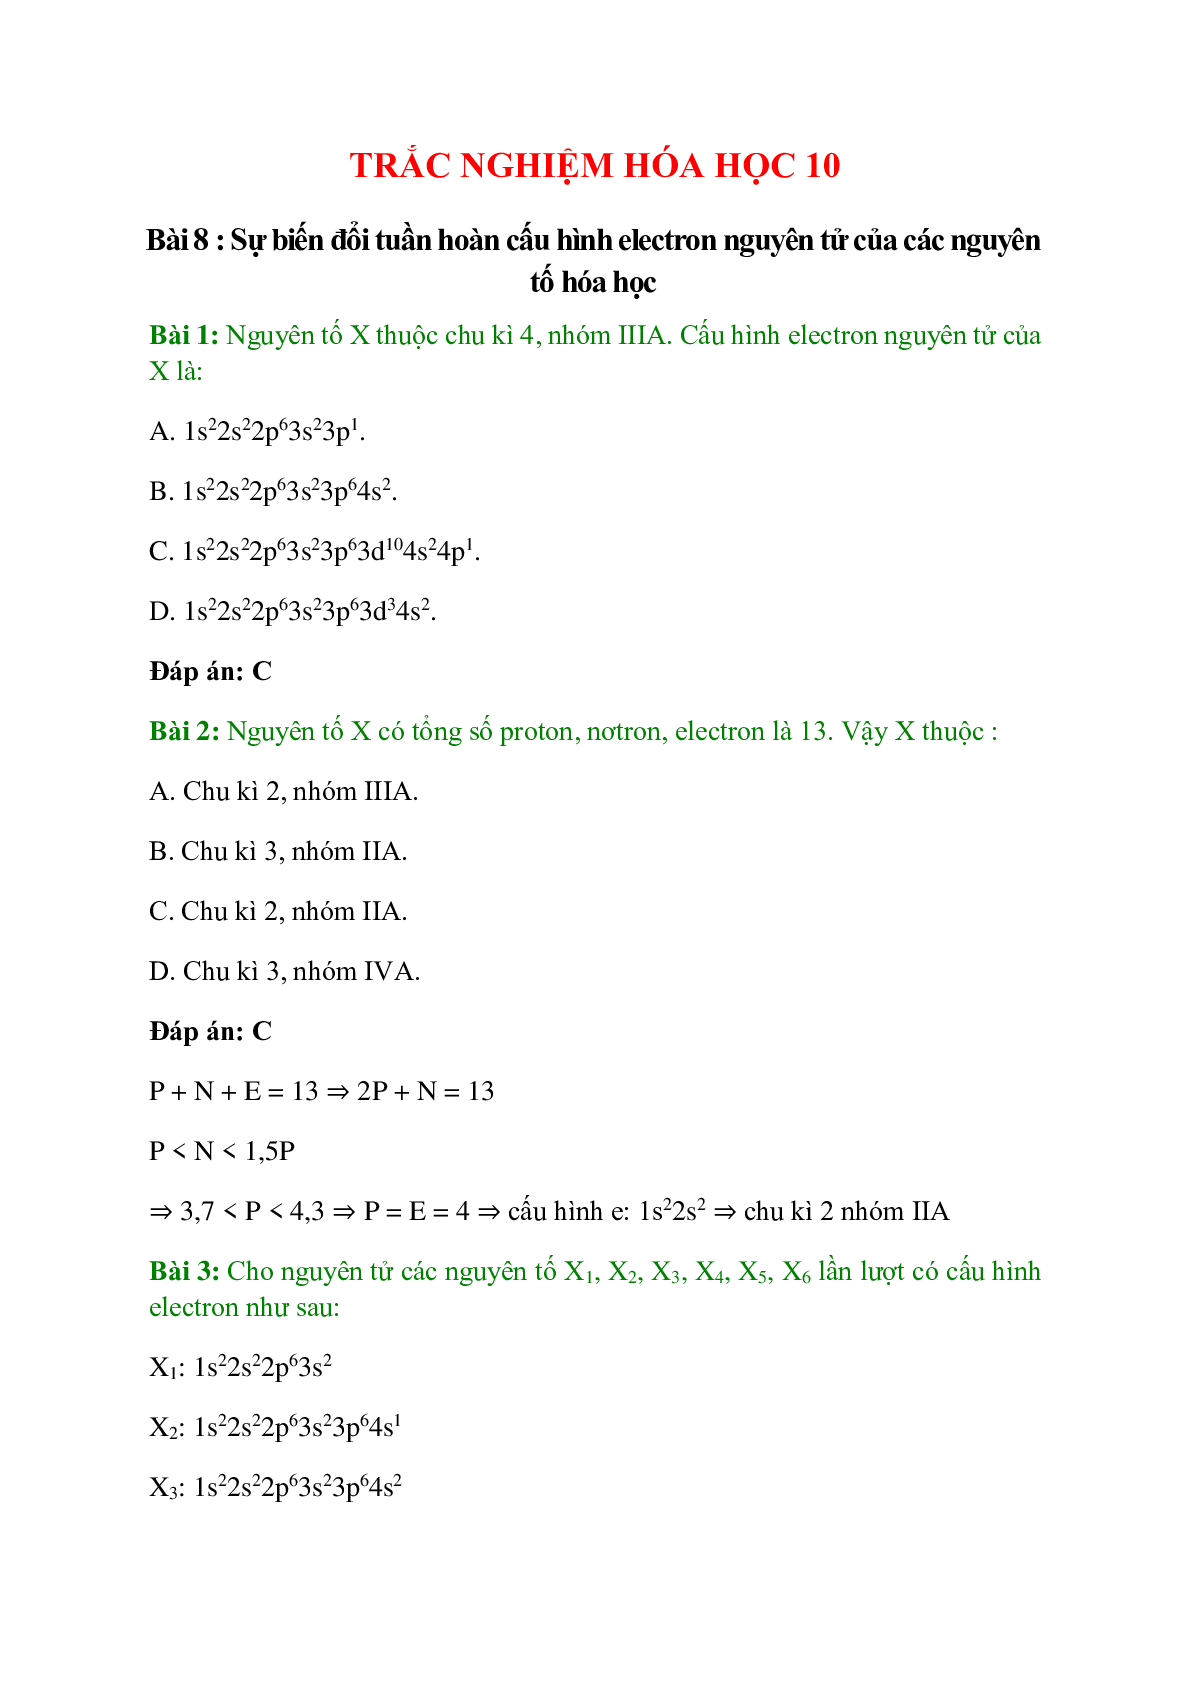 Trắc nghiệm Sự biến đổi tuần hoàn cấu hình electron nguyên tử của các nguyên tố hóa học có đáp án - Hóa học 10 (trang 1)